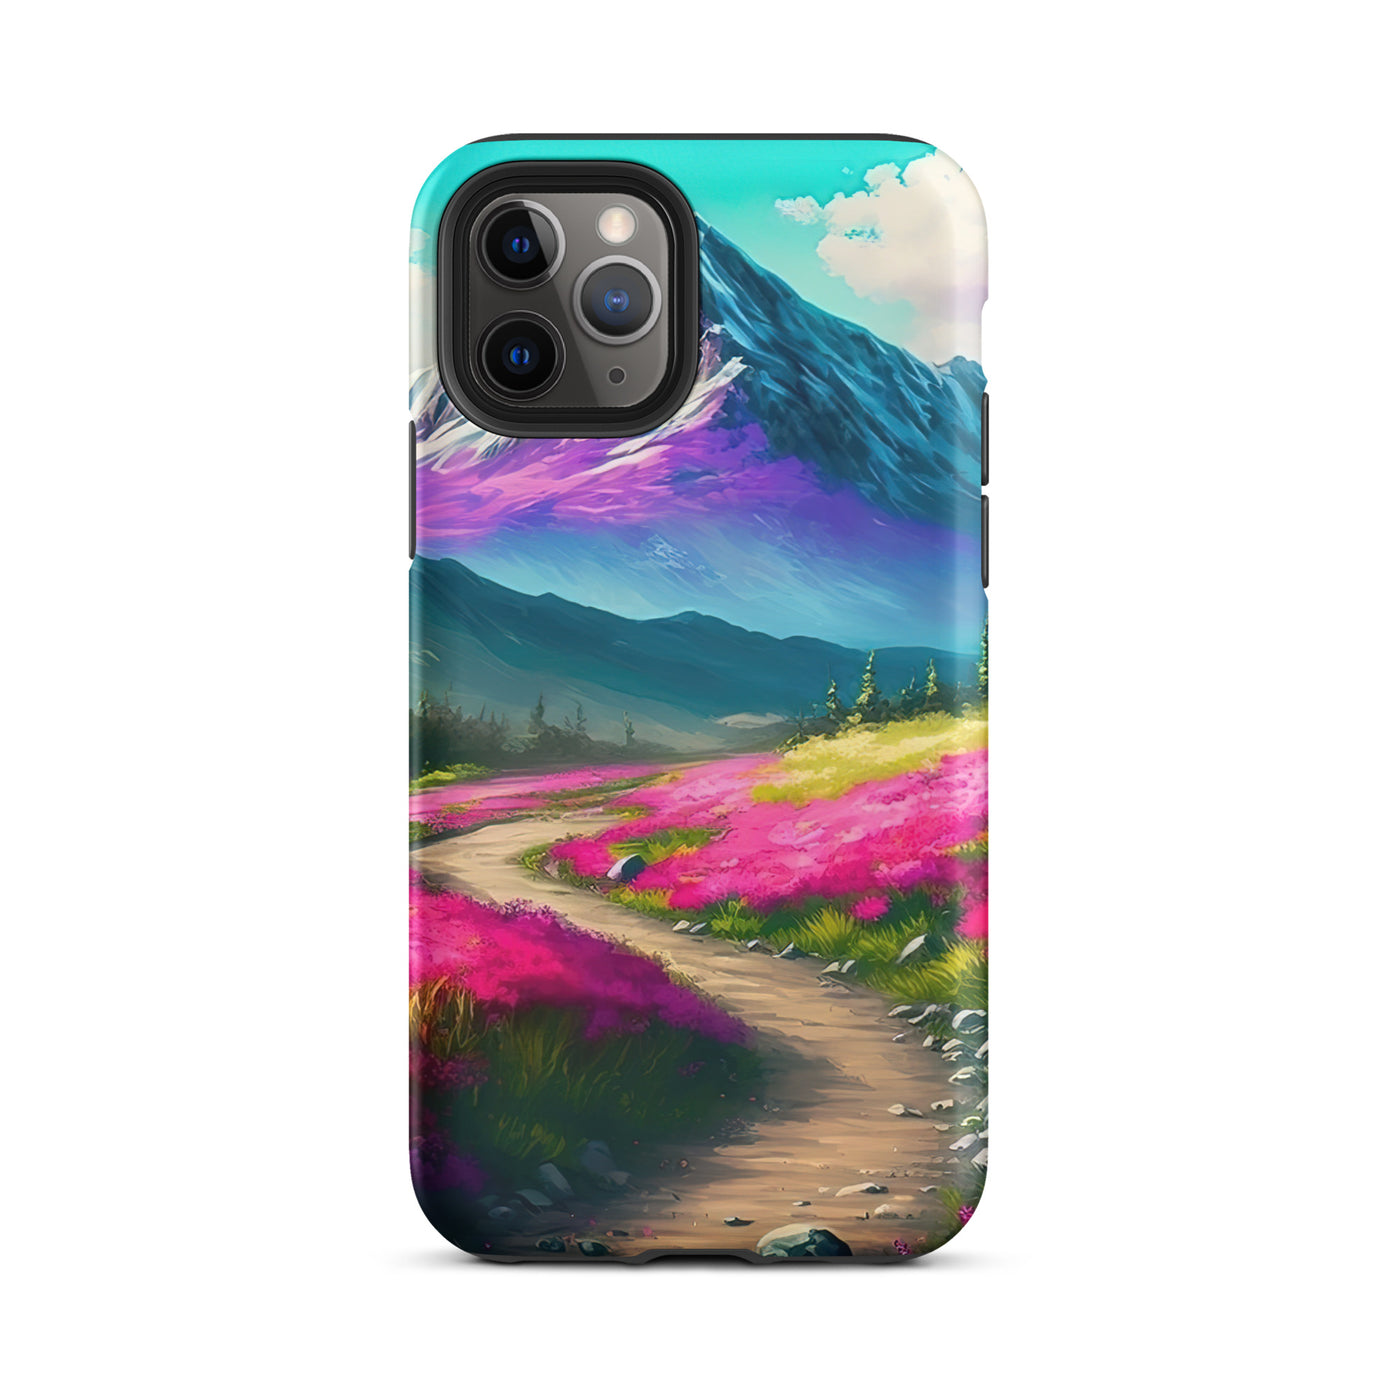 Berg, pinke Blumen und Wanderweg - Landschaftsmalerei - iPhone Schutzhülle (robust) berge xxx iPhone 11 Pro